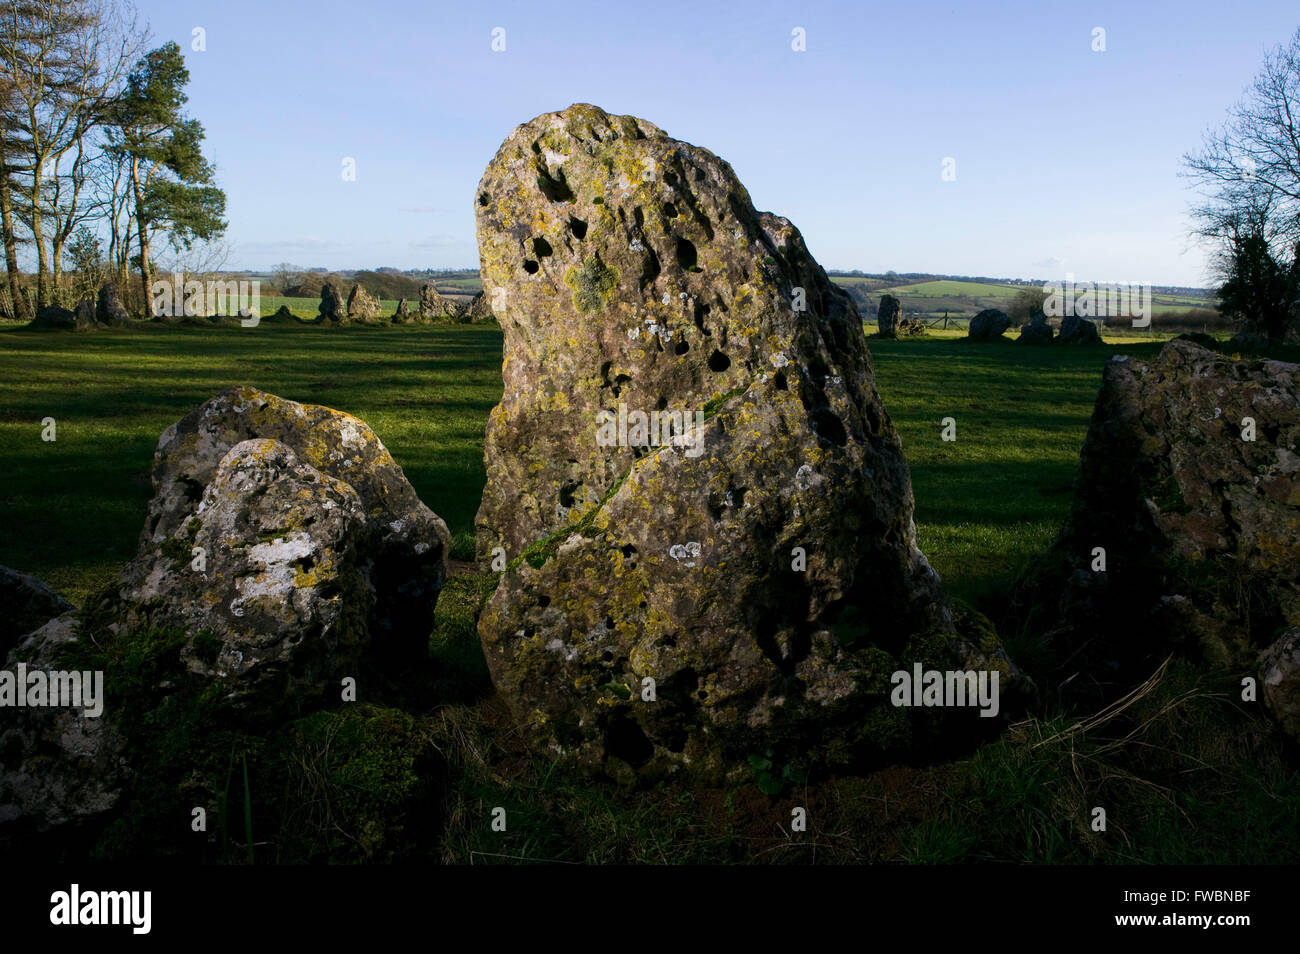 Der Steinkreis und Einzelsteine bekannt als die "Rollright Stones", ein Steinkreis der Jungsteinzeit auf einem Hügel in Oxfordshire, UK. Der Steinkreis ist von Menschen gemacht um 12:00 Havebeenmade gemeldet. Stockfoto